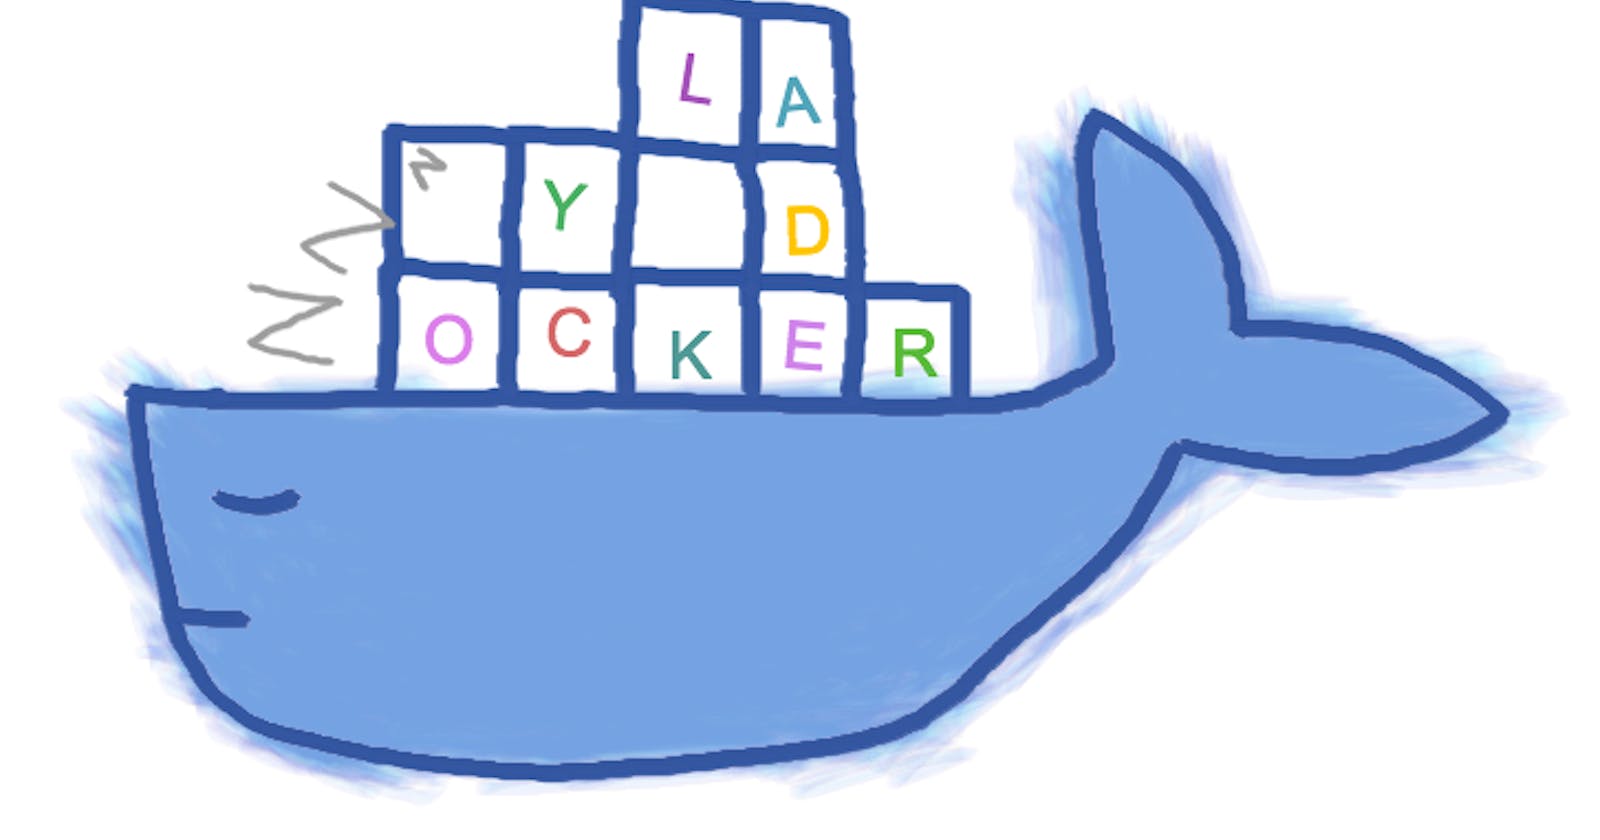 Comprehensive Guide to Mastering Lazydocker: A Terminal-Based UI for Docker Management